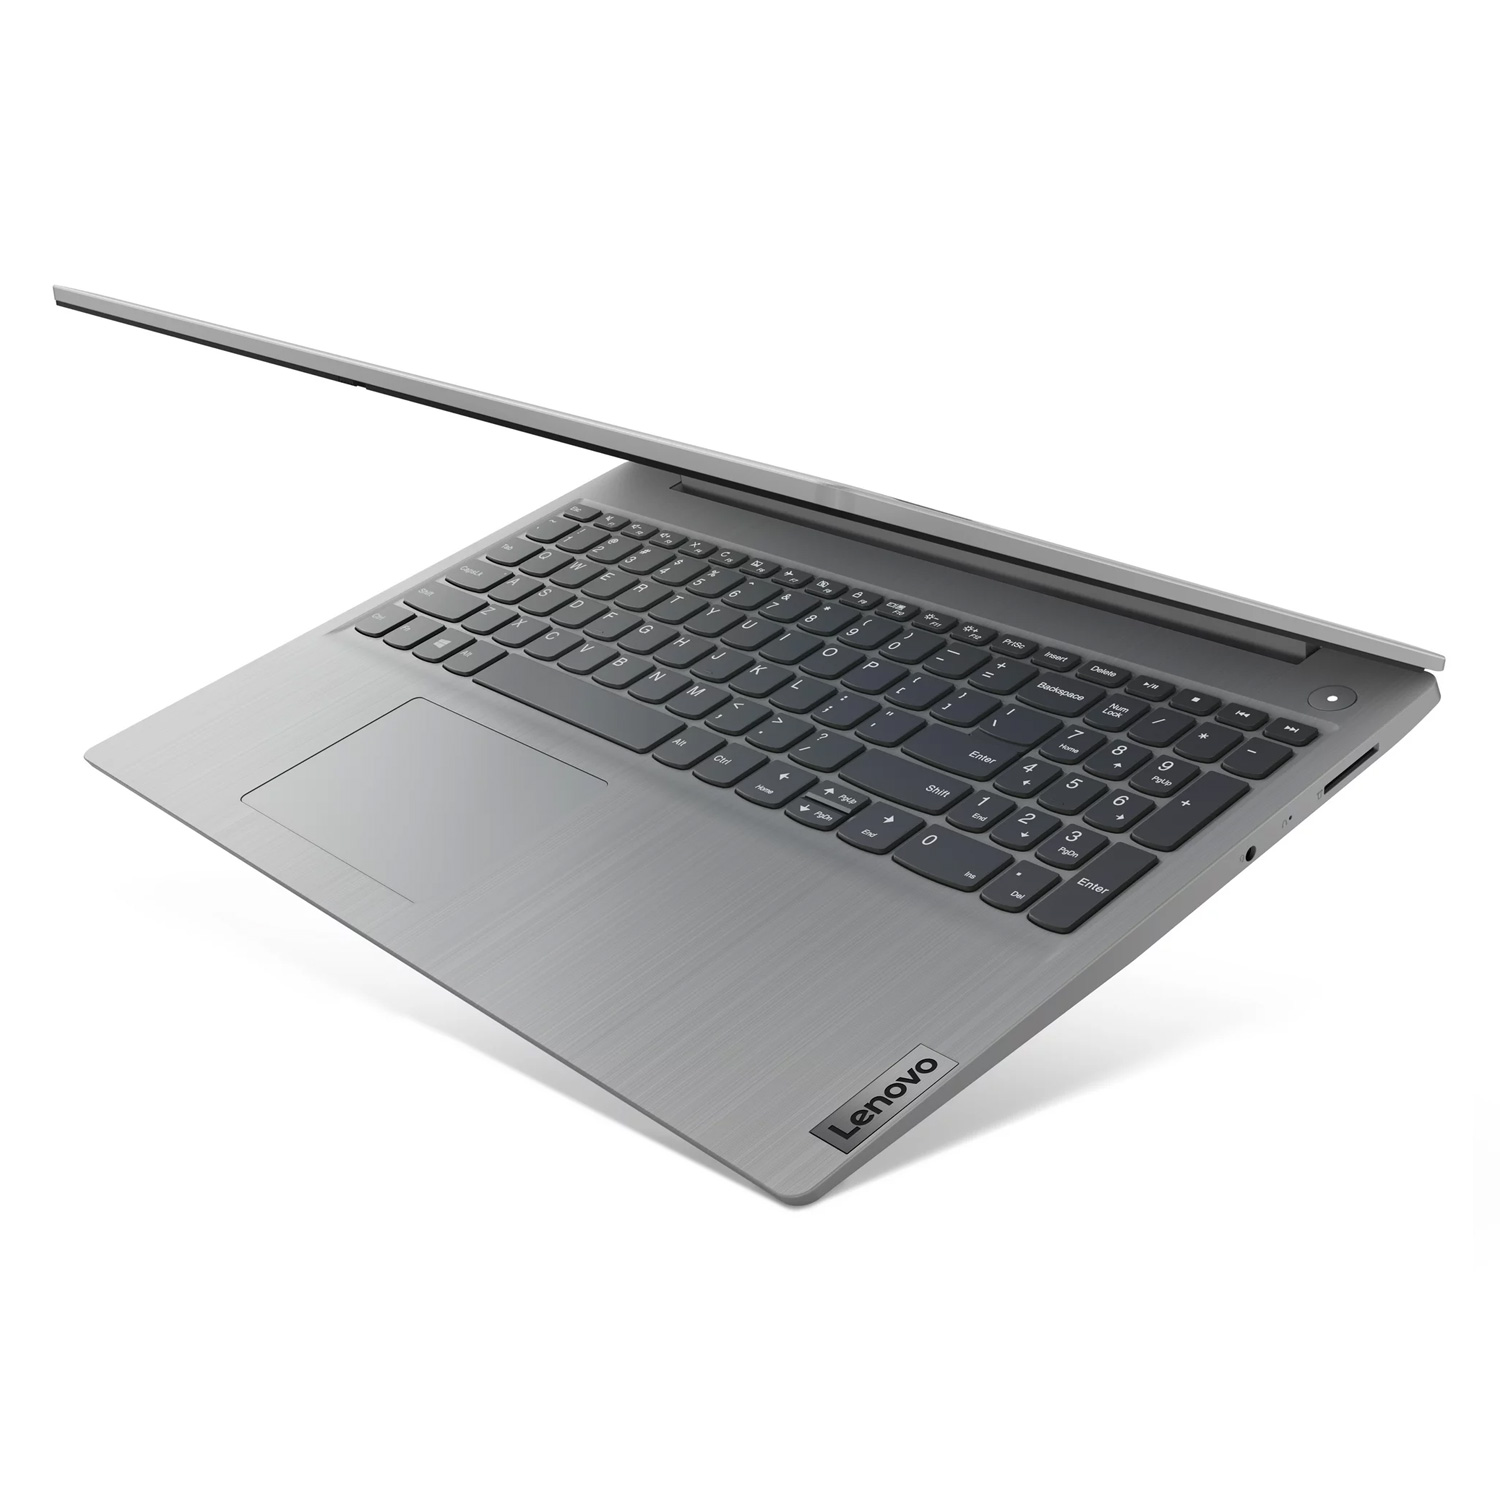 Notebook Lenovo 81X700FGUS 14" Intel Core I3-1115G4 128GB SSD 4GB RAM Tela 14.0" - Cinza